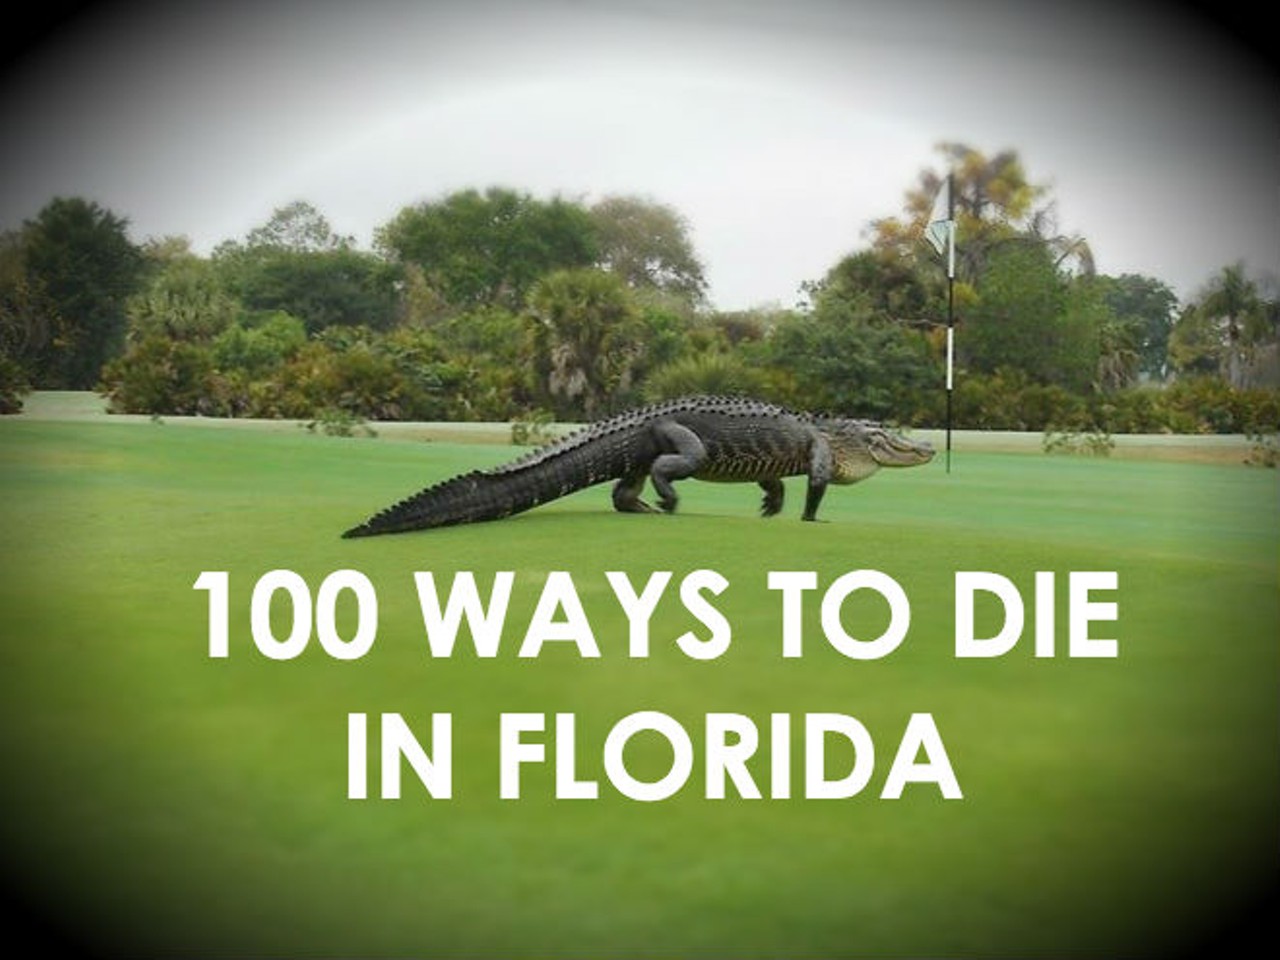 100 ways to die in Florida